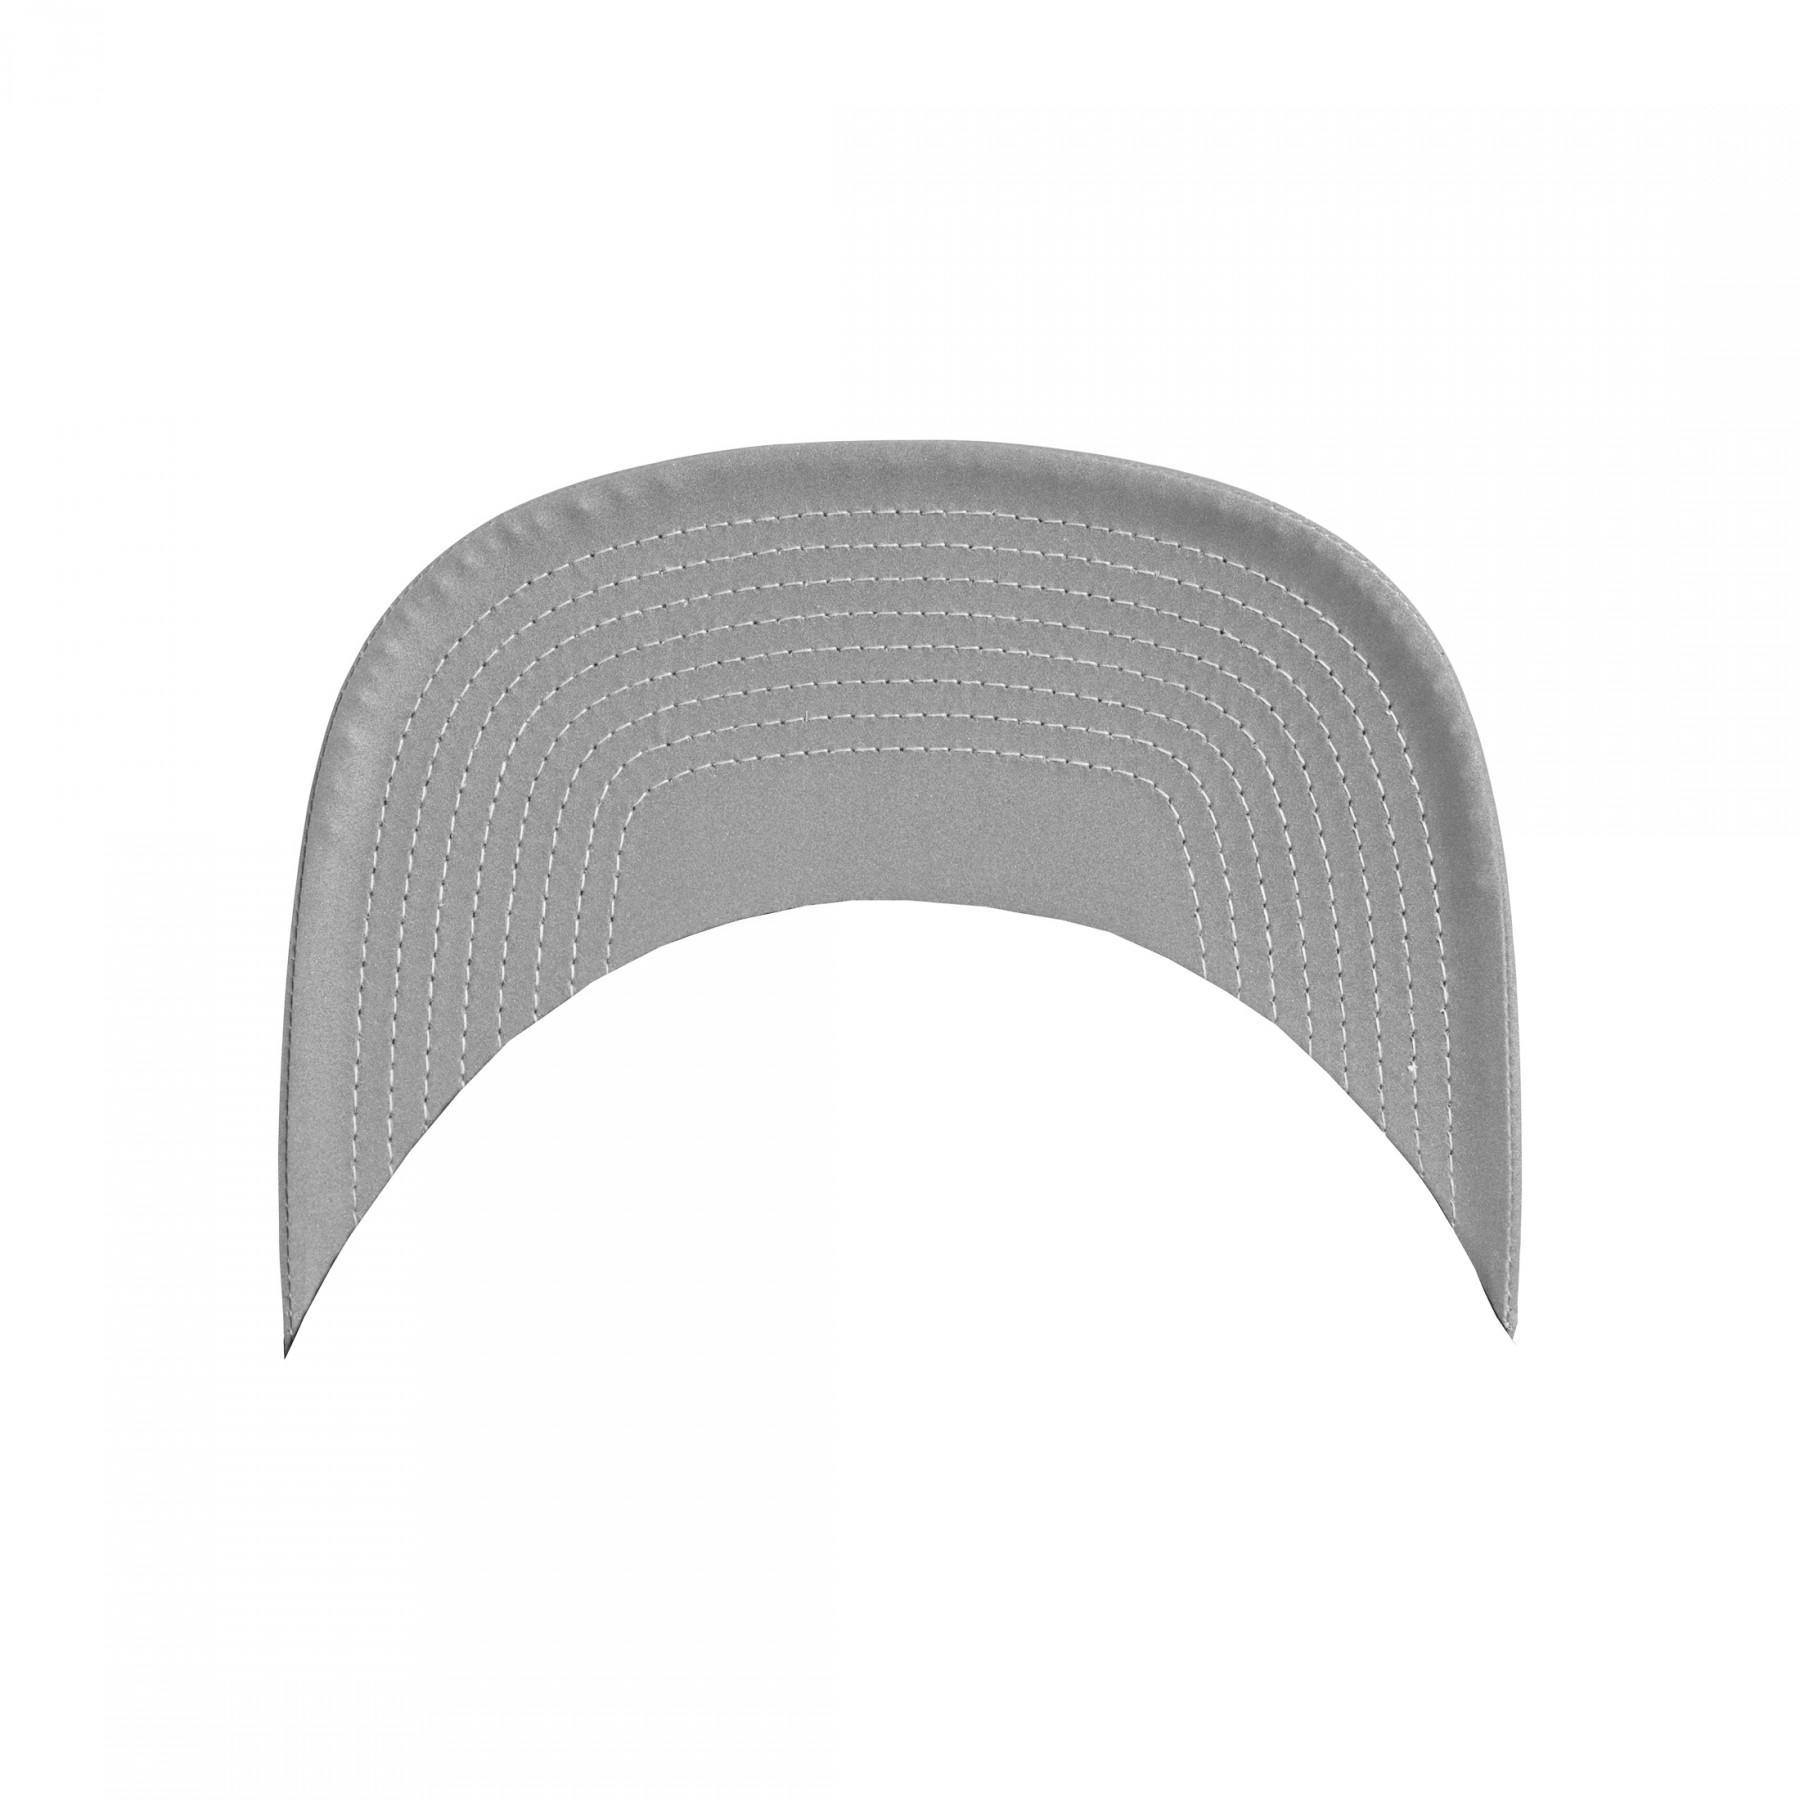 Kapsyl Flexfit reflective visor